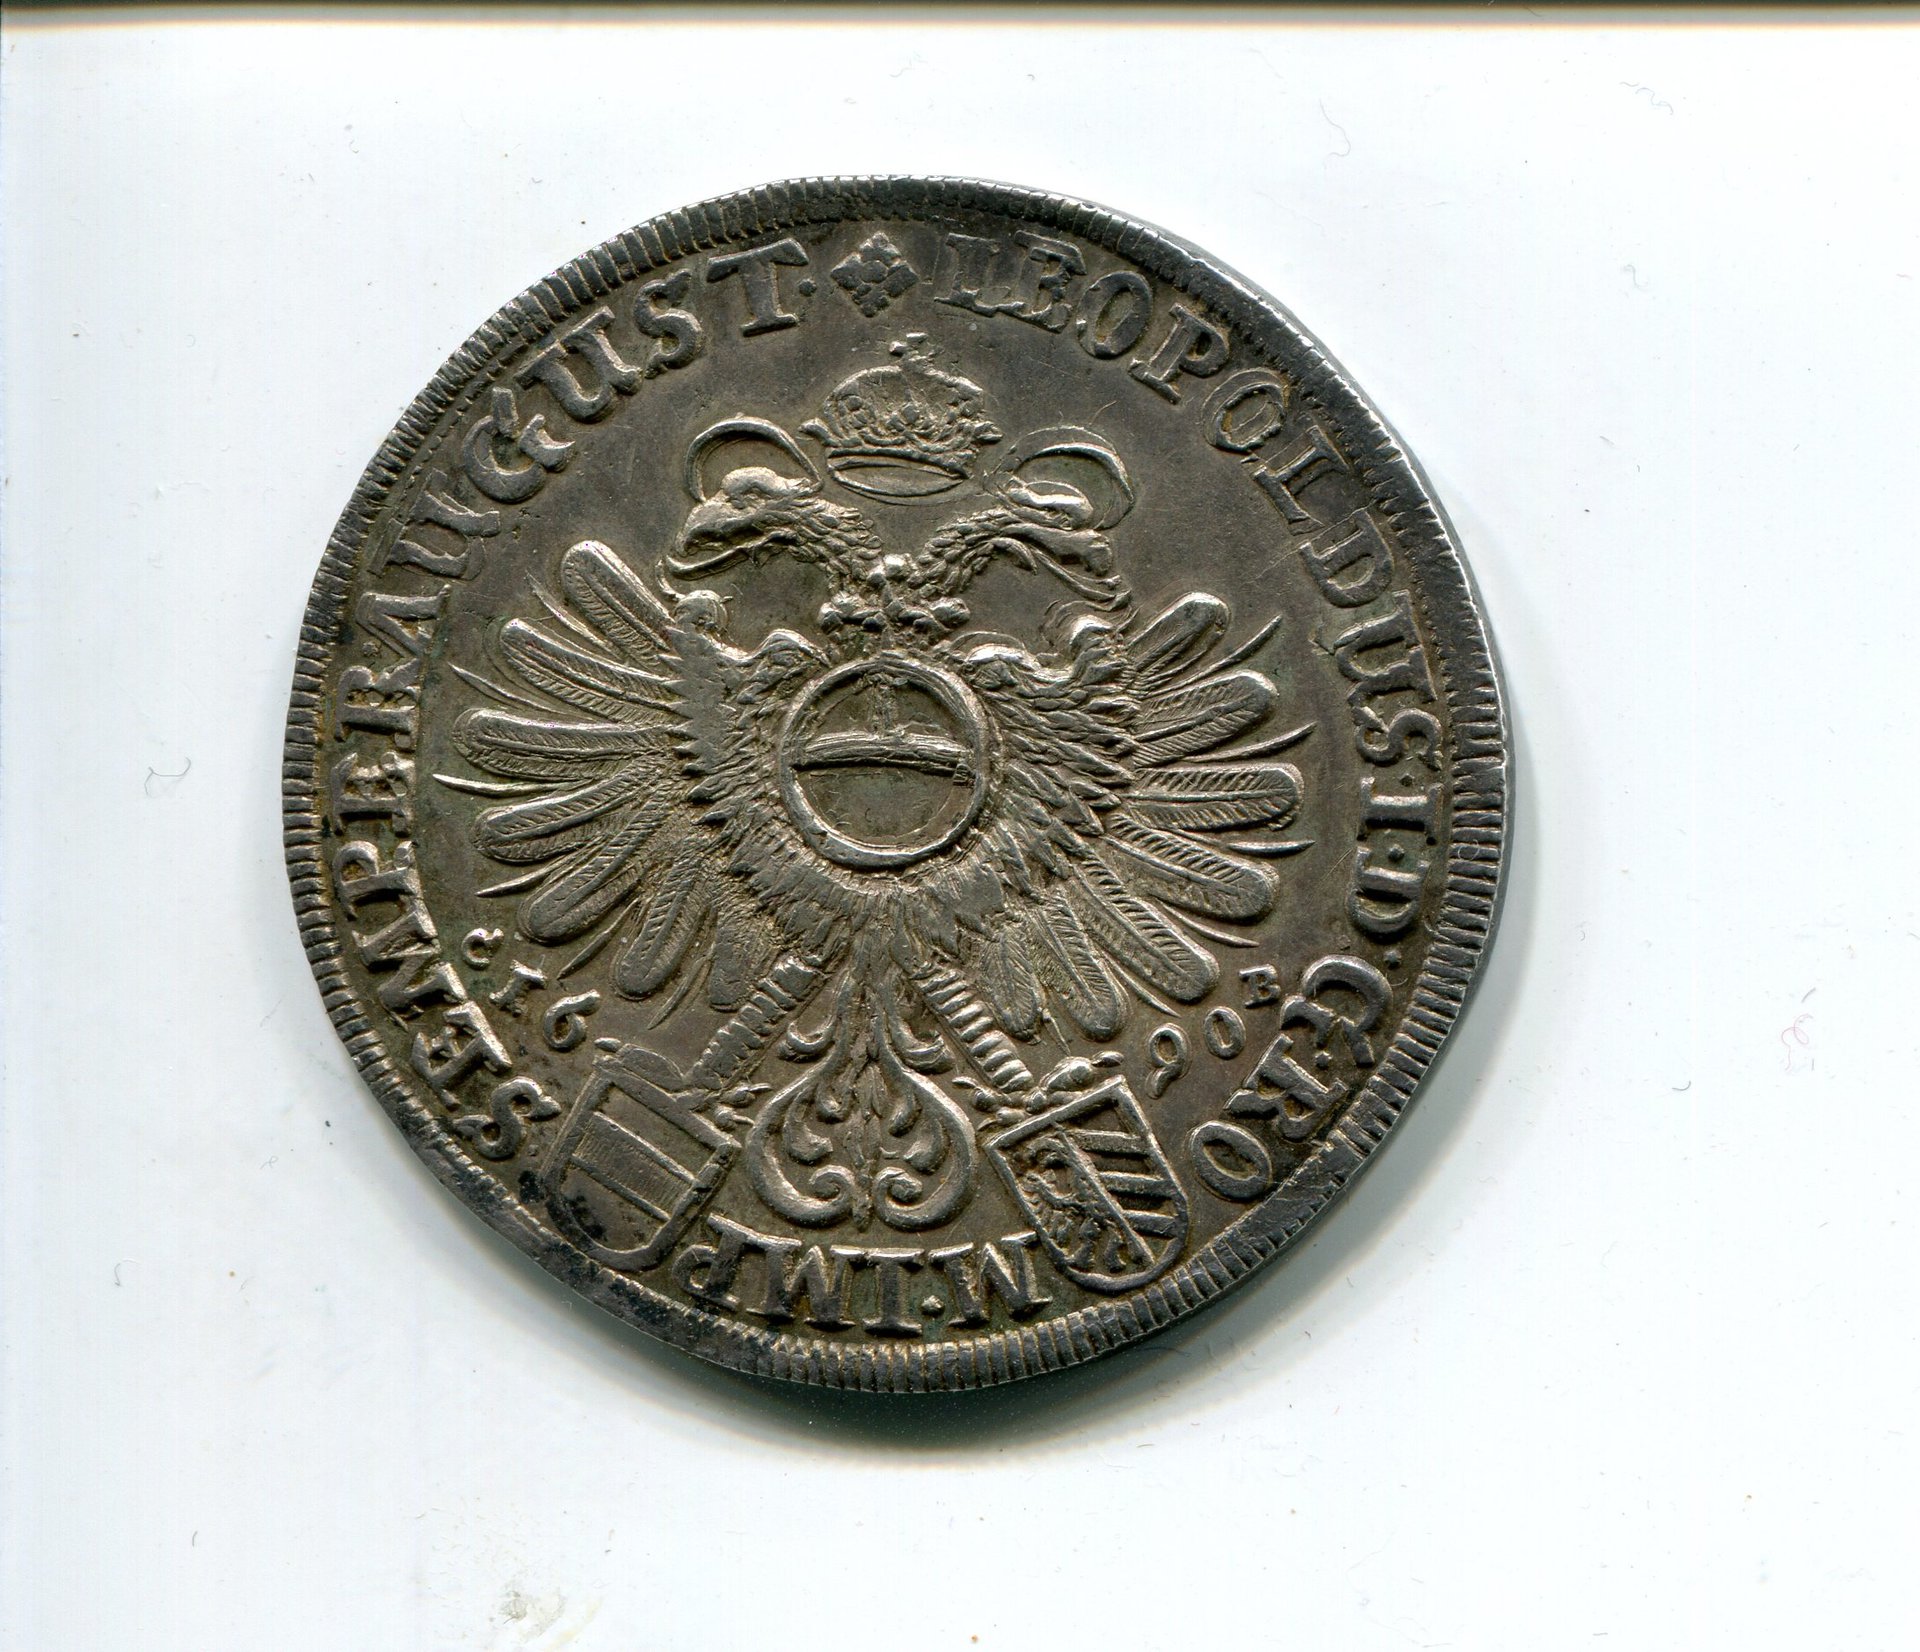 Friedberg Phil Adolph v Rau Taler 1690 rev 009.jpg